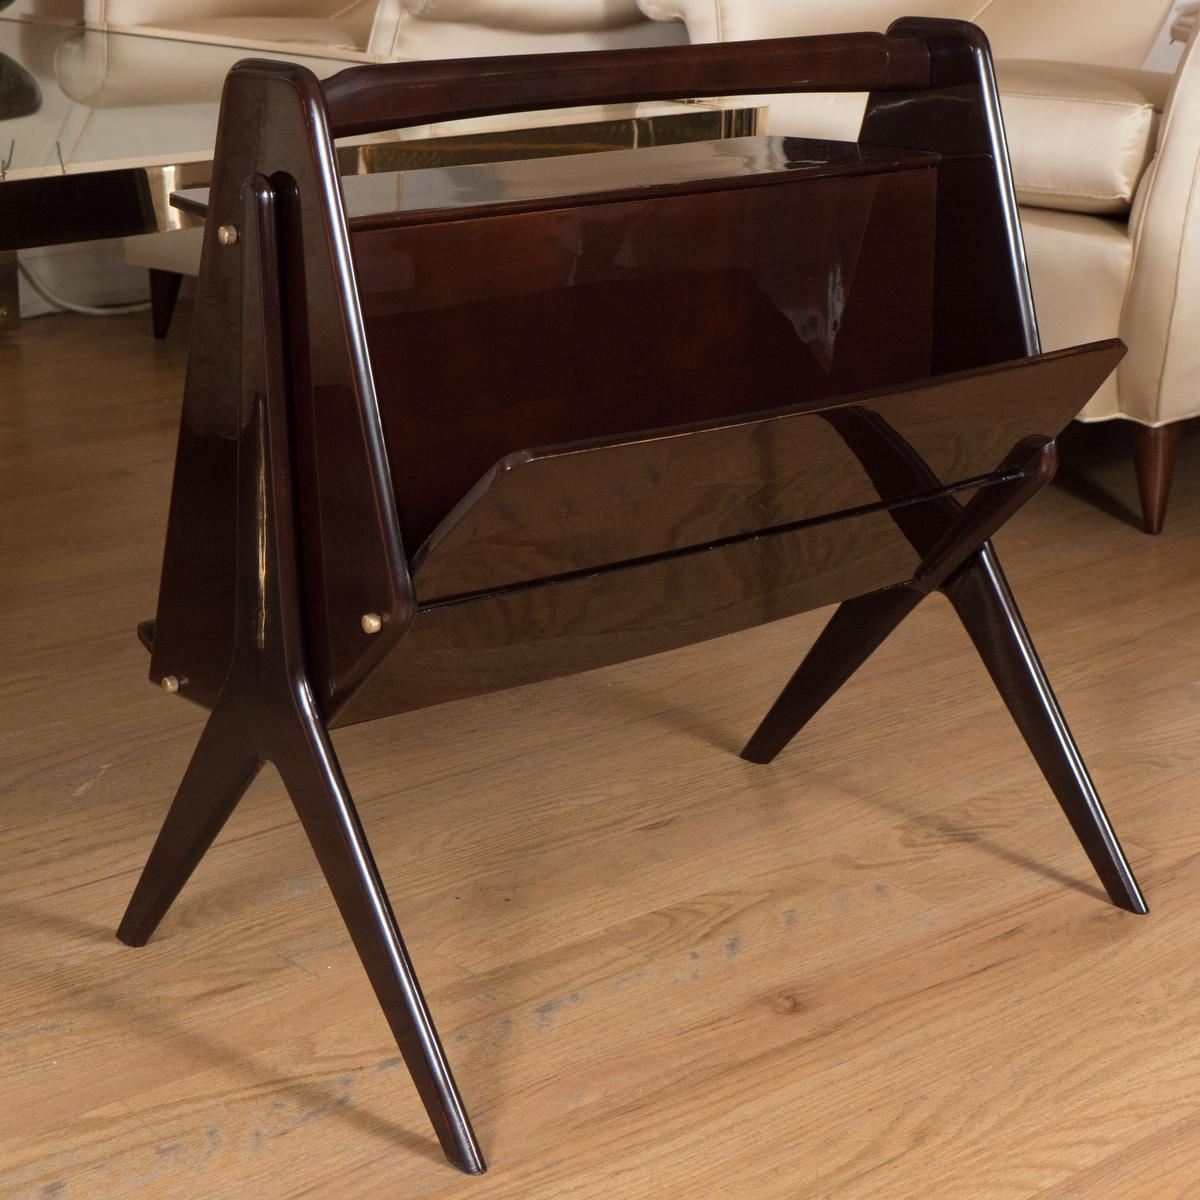 Table d'appoint moderniste en bois laqué avec des détails en laiton.